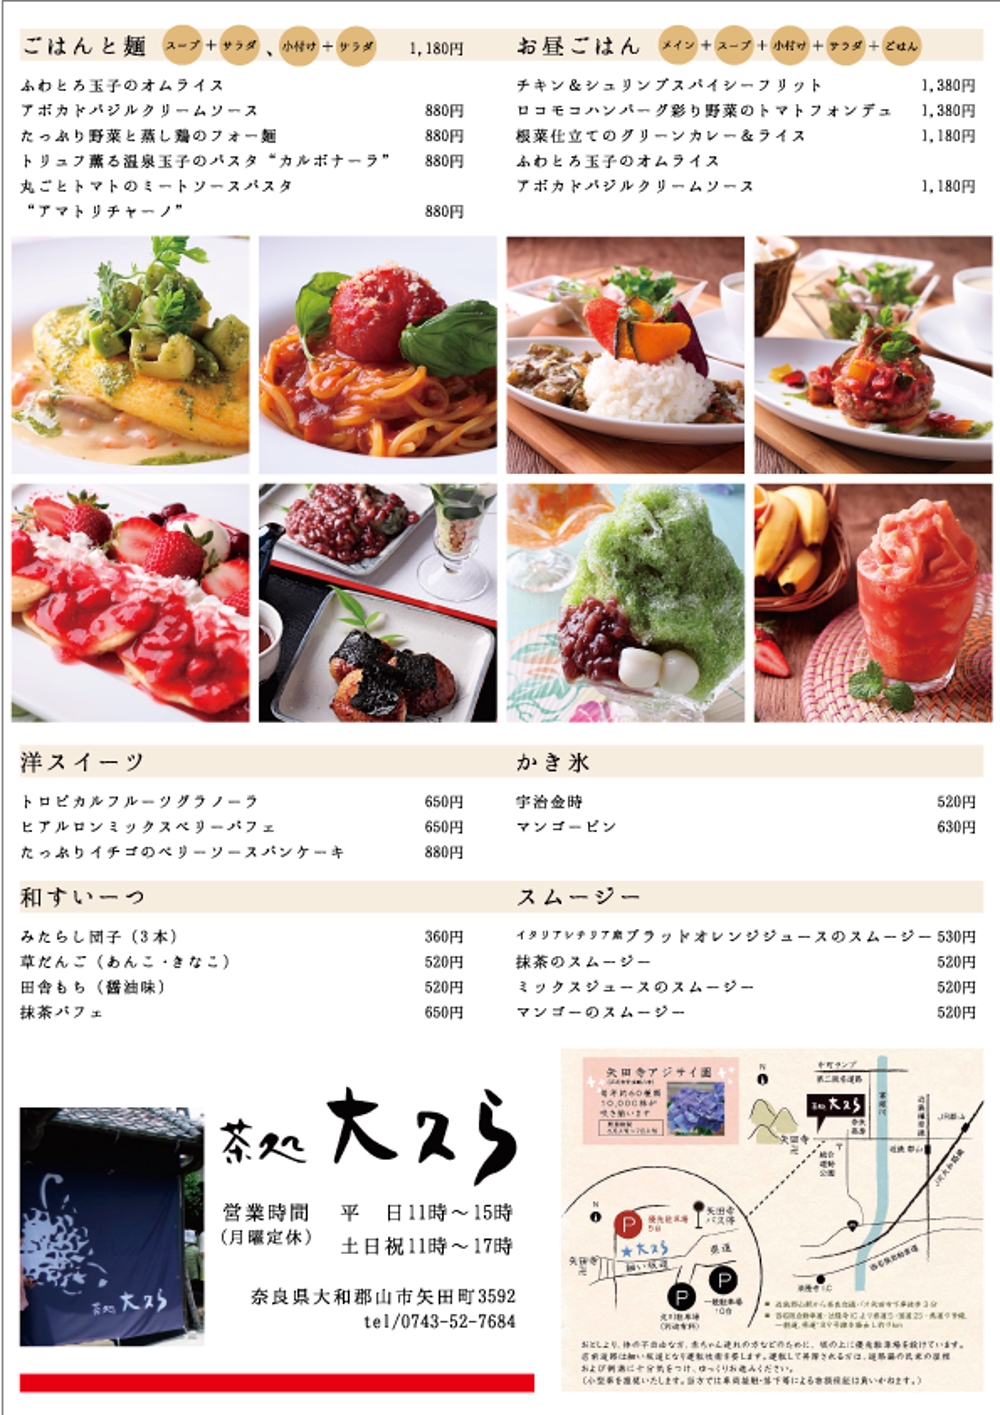 和カフェ「茶処大久ら」店舗リニューアル 集客チラシの作成をお願いします。